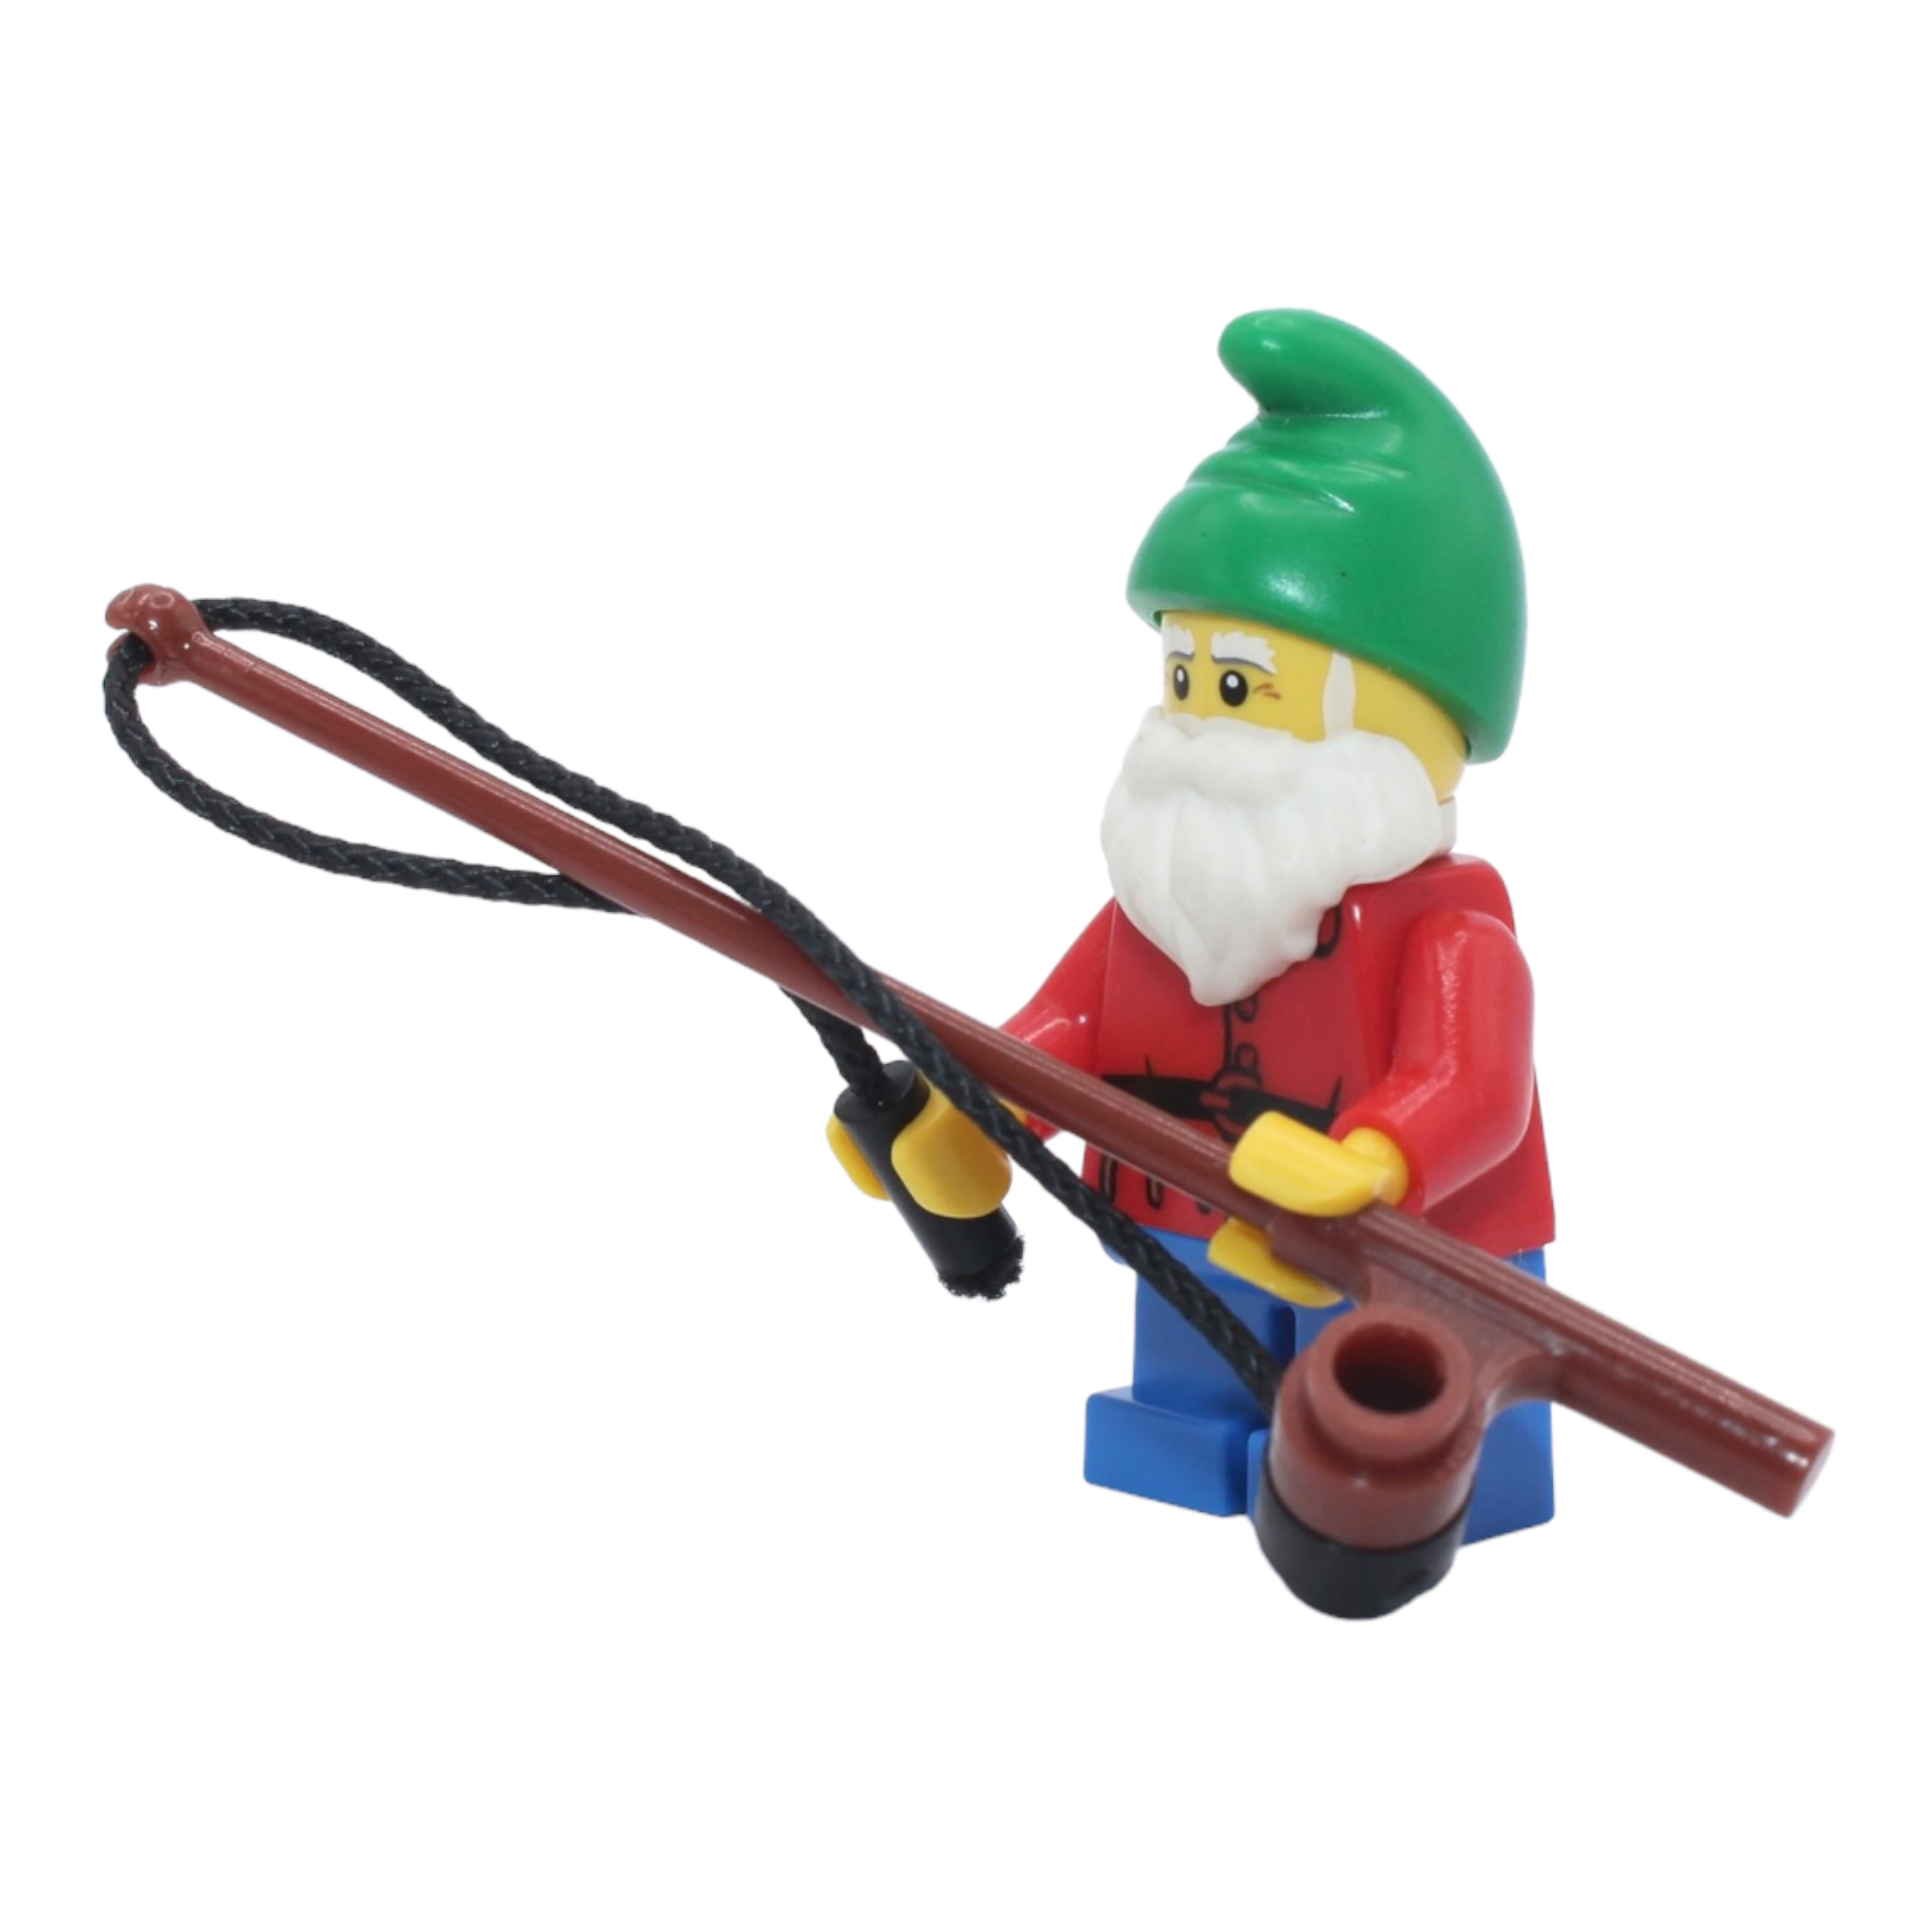 LEGO Series 4: Lawn Gnome